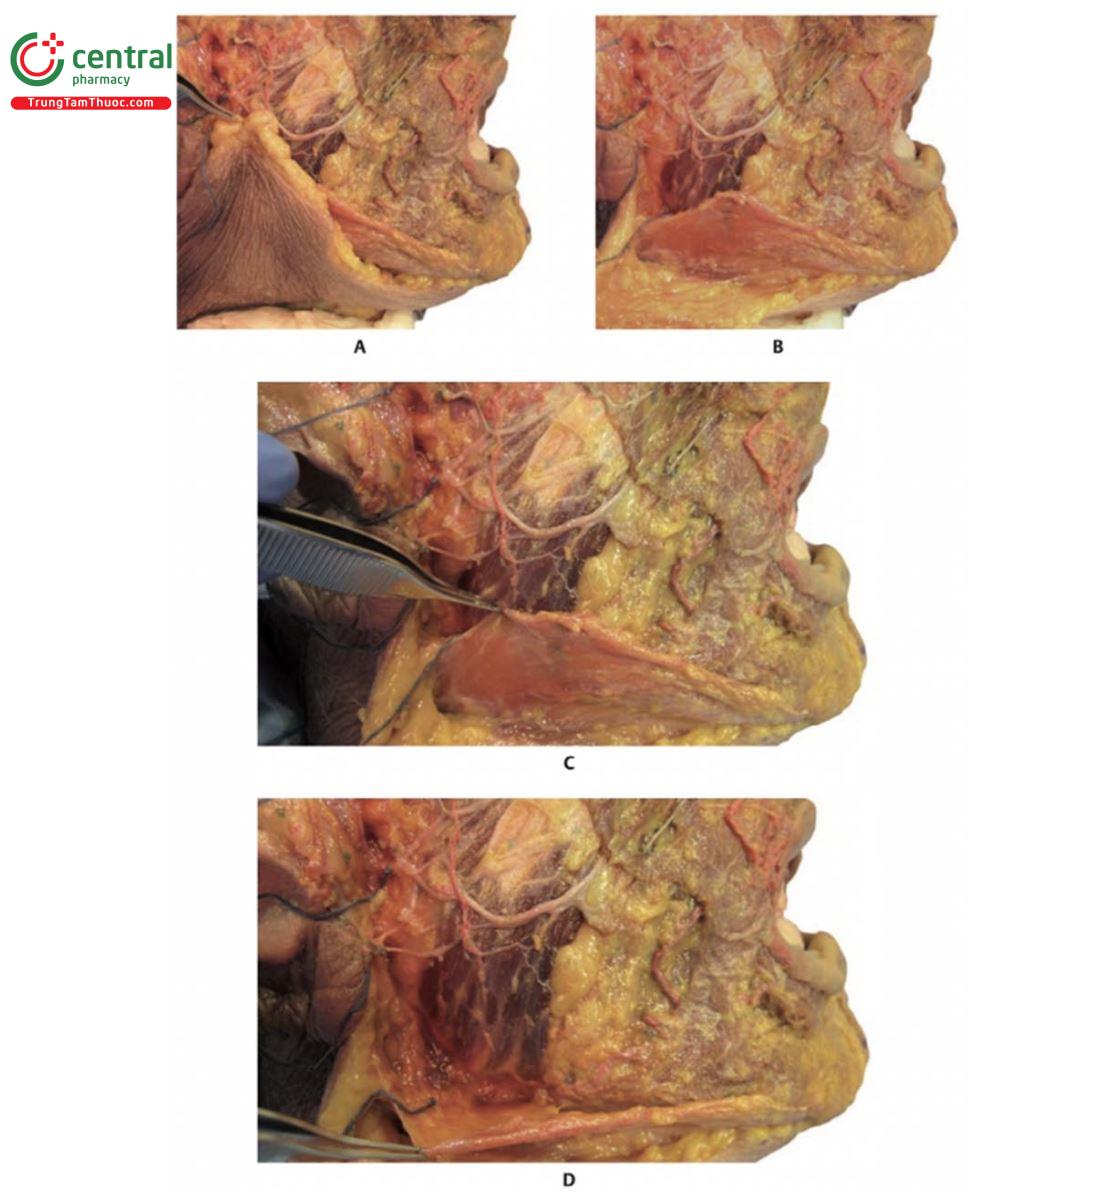 Hình 17.16 A. Bên phải 1/3 dưới khuôn mặt của xác tươi với lớp da được kéo lên trên phần cơ platysma. B. Hình ảnh sau khi loại bỏ da, có thể nhìn thấy cơ platysma bao phủ một phần cơ cắn. C. Hình ảnh với cơ platysma được kéo lên và che đi một phần cơ cắn. D. Hình ảnh với cơ platysma được kéo ngược để lộ cơ cắn  và tuyến mang tai phía sau.